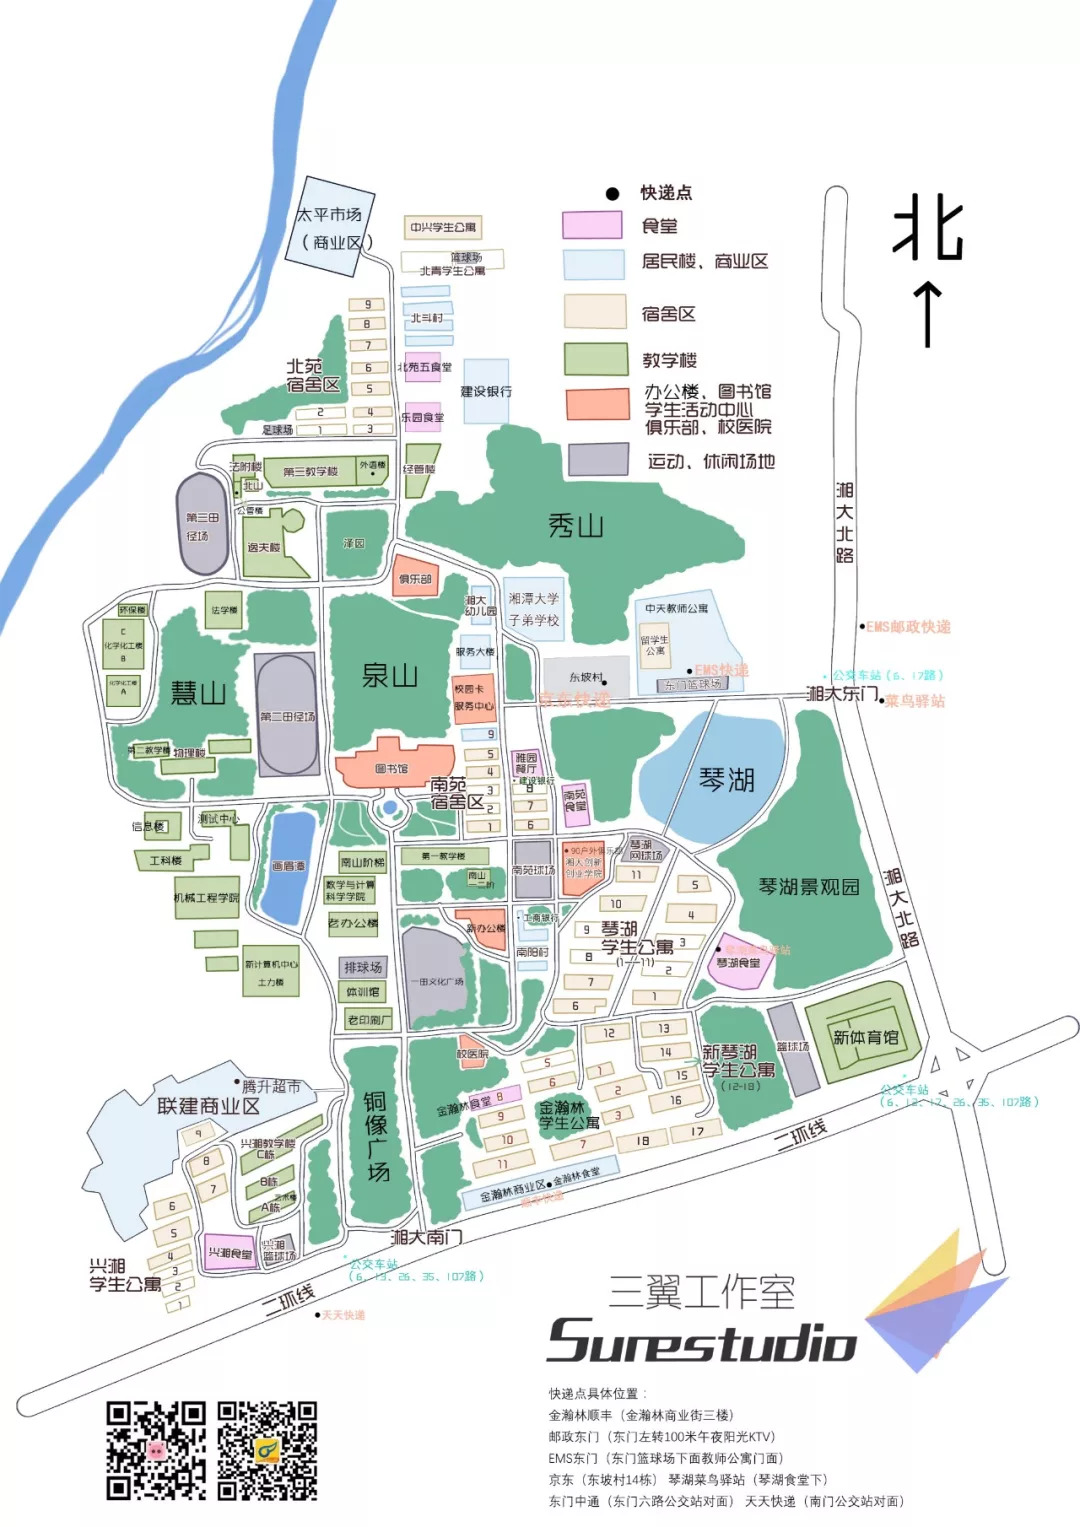 省部共建大学,111计划,中西部高校基础能力建设工程校歌:湘潭大学校歌